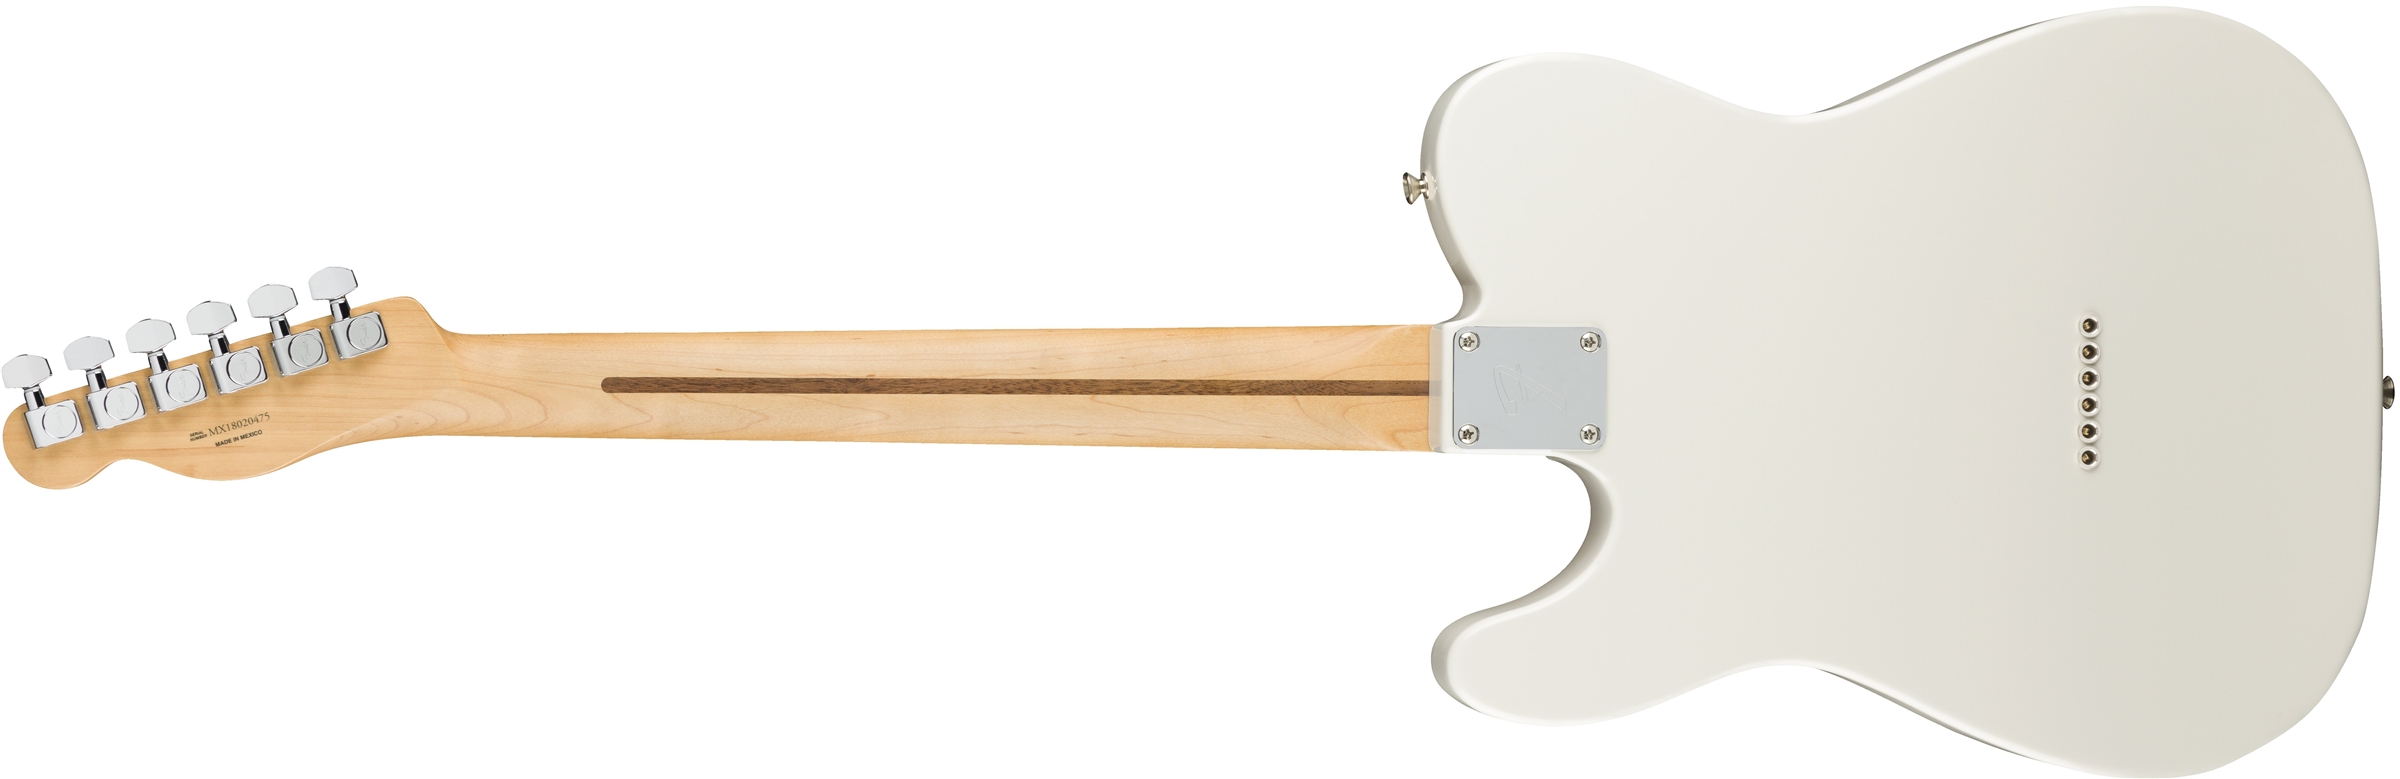 Fender Tele Player Mex Mn - Polar White - E-Gitarre in Teleform - Variation 2